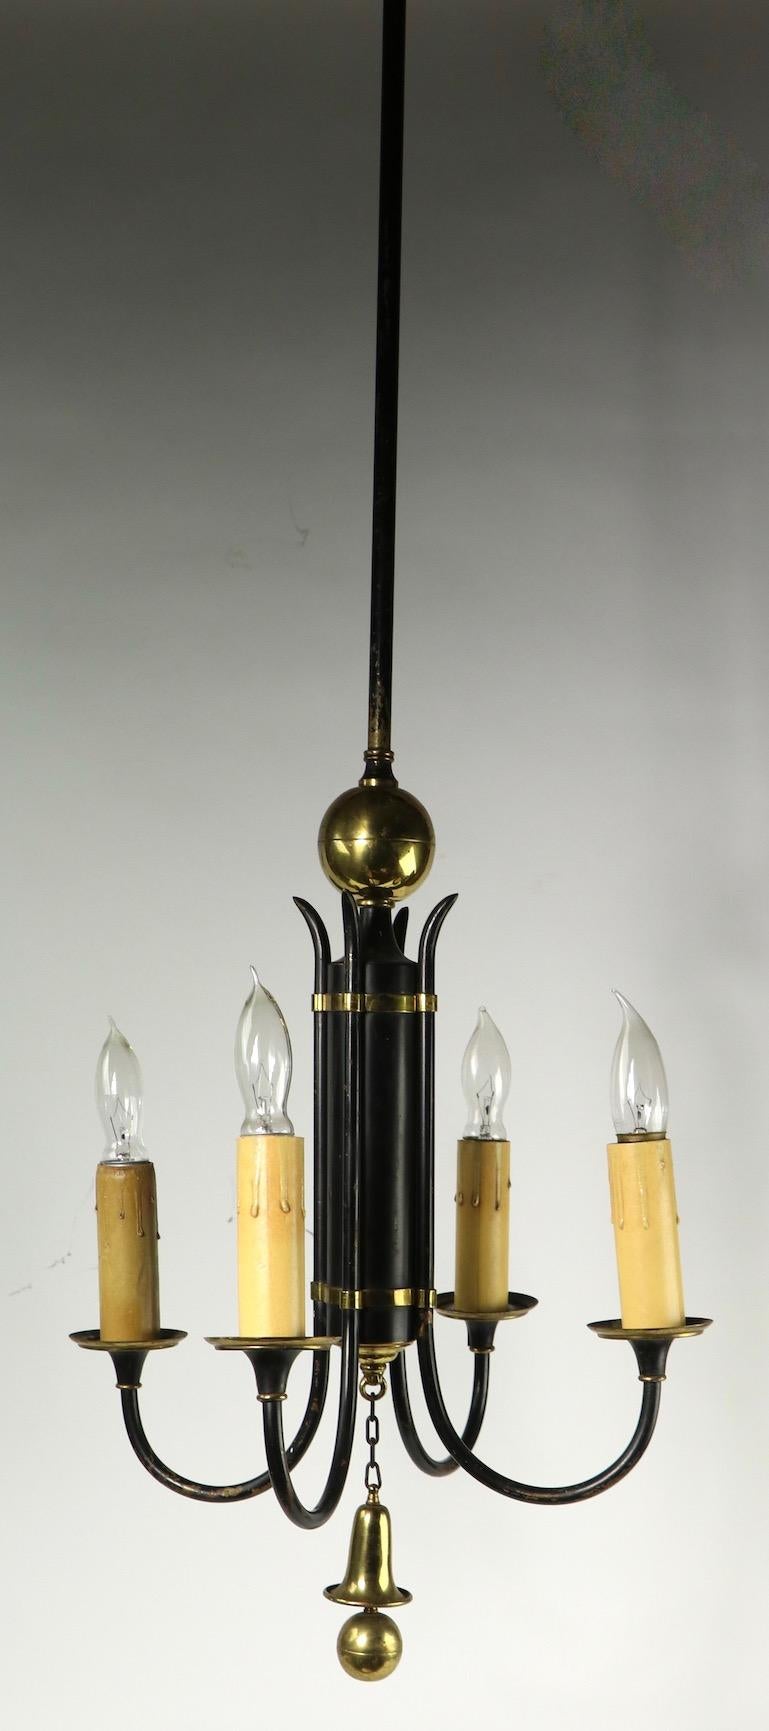 Stilvoller vierflammiger Kronleuchter aus schwarz lackiertem Stahl und Messingverzierungen. Die Leuchte hat vier Kerzenfassungen, die am zylindrischen Mittelteil befestigt sind. Dieser Kronleuchter ist gut, original und funktionsfähig Zustand, es